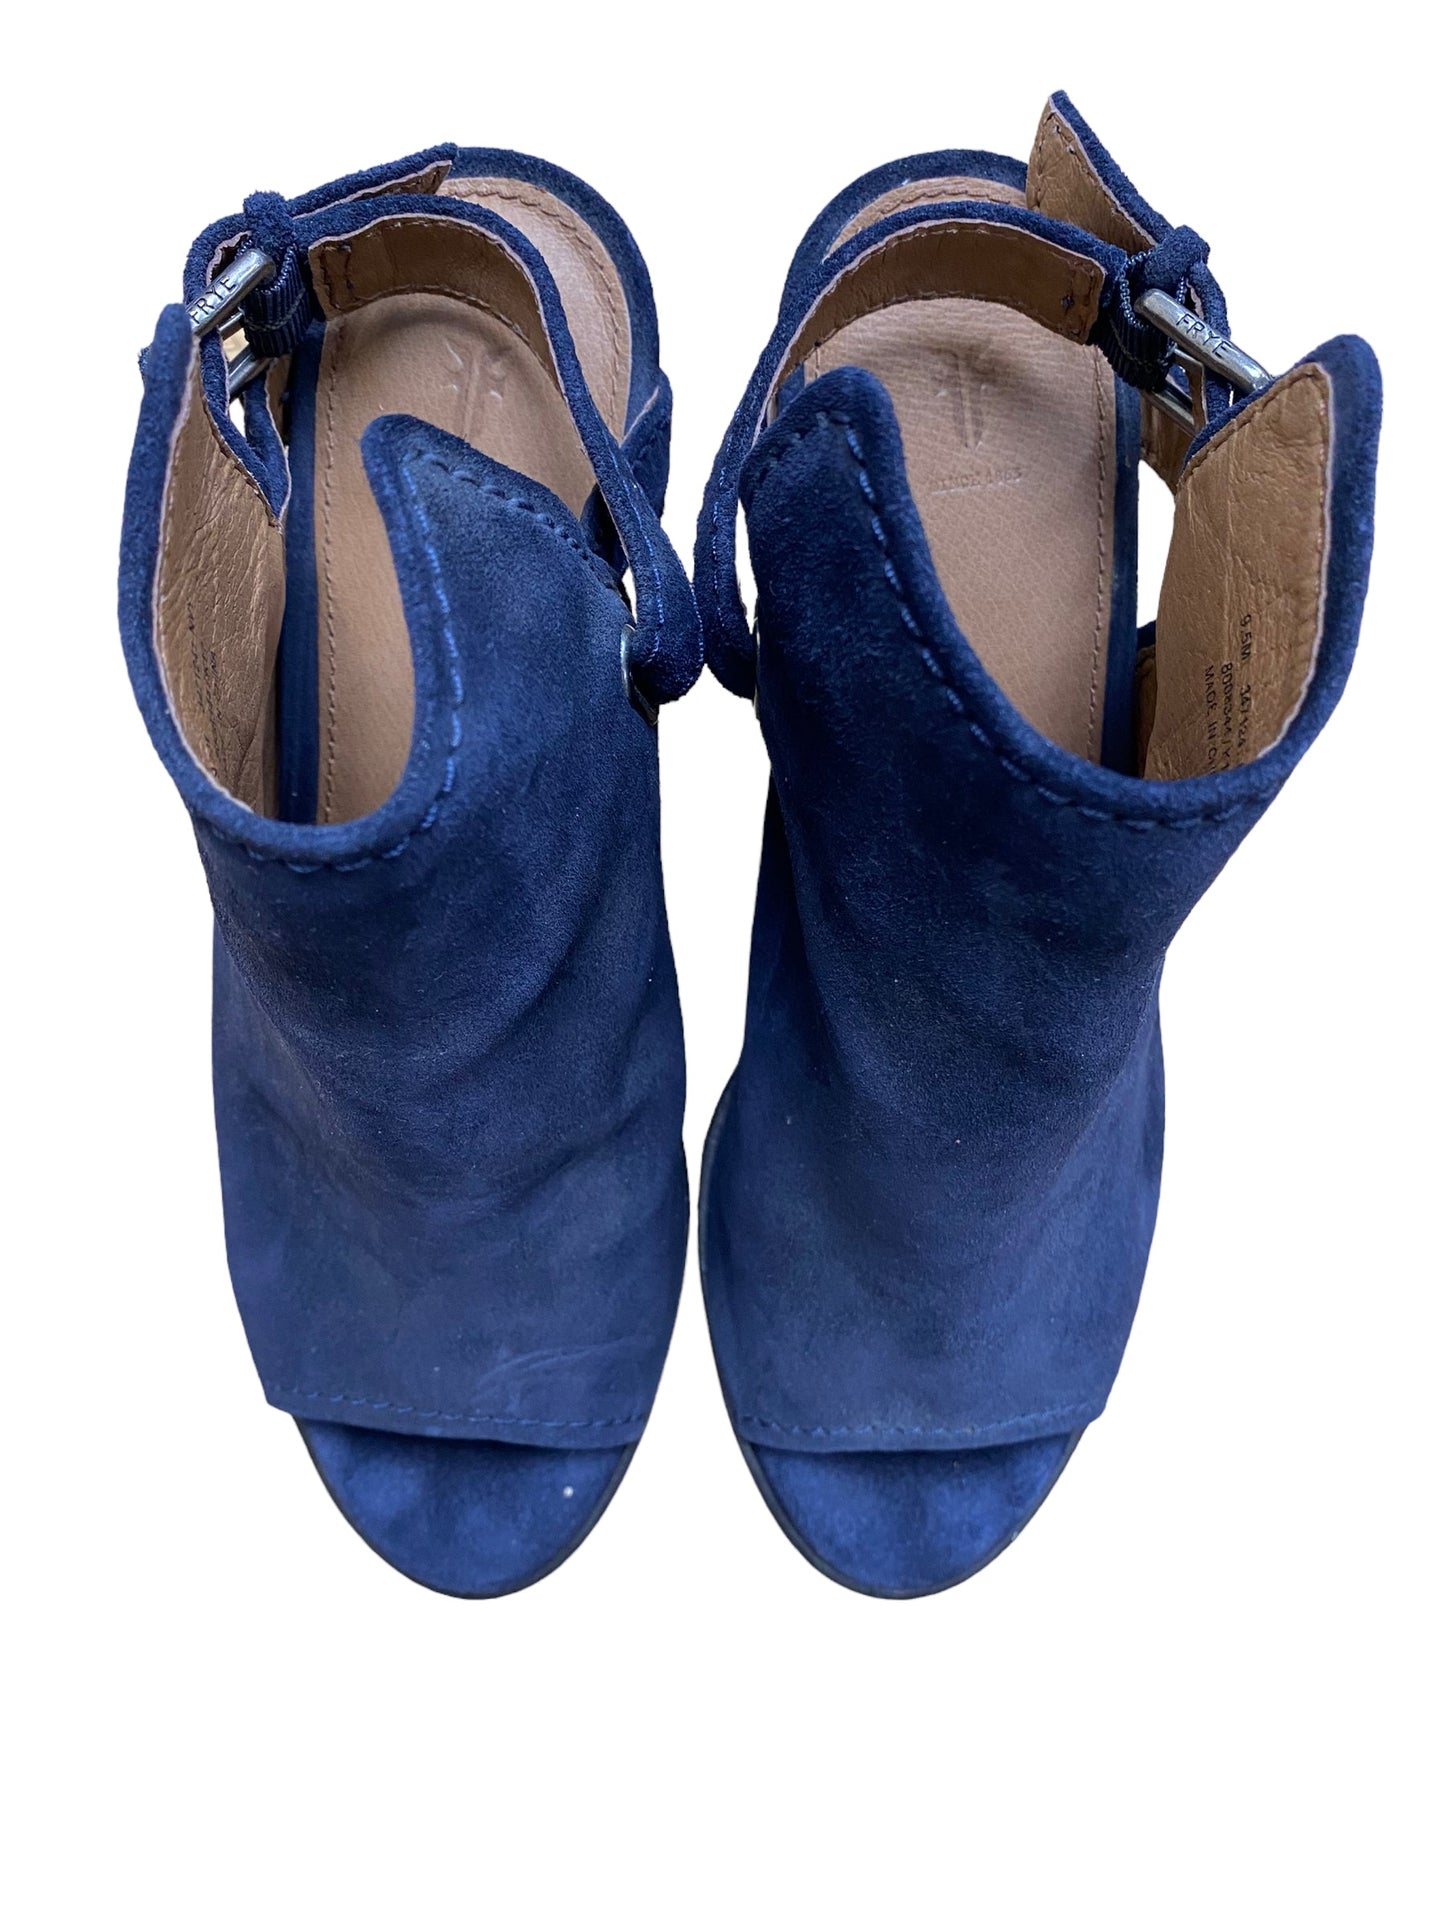 Sandals Heels Block By Frye  Size: 9.5